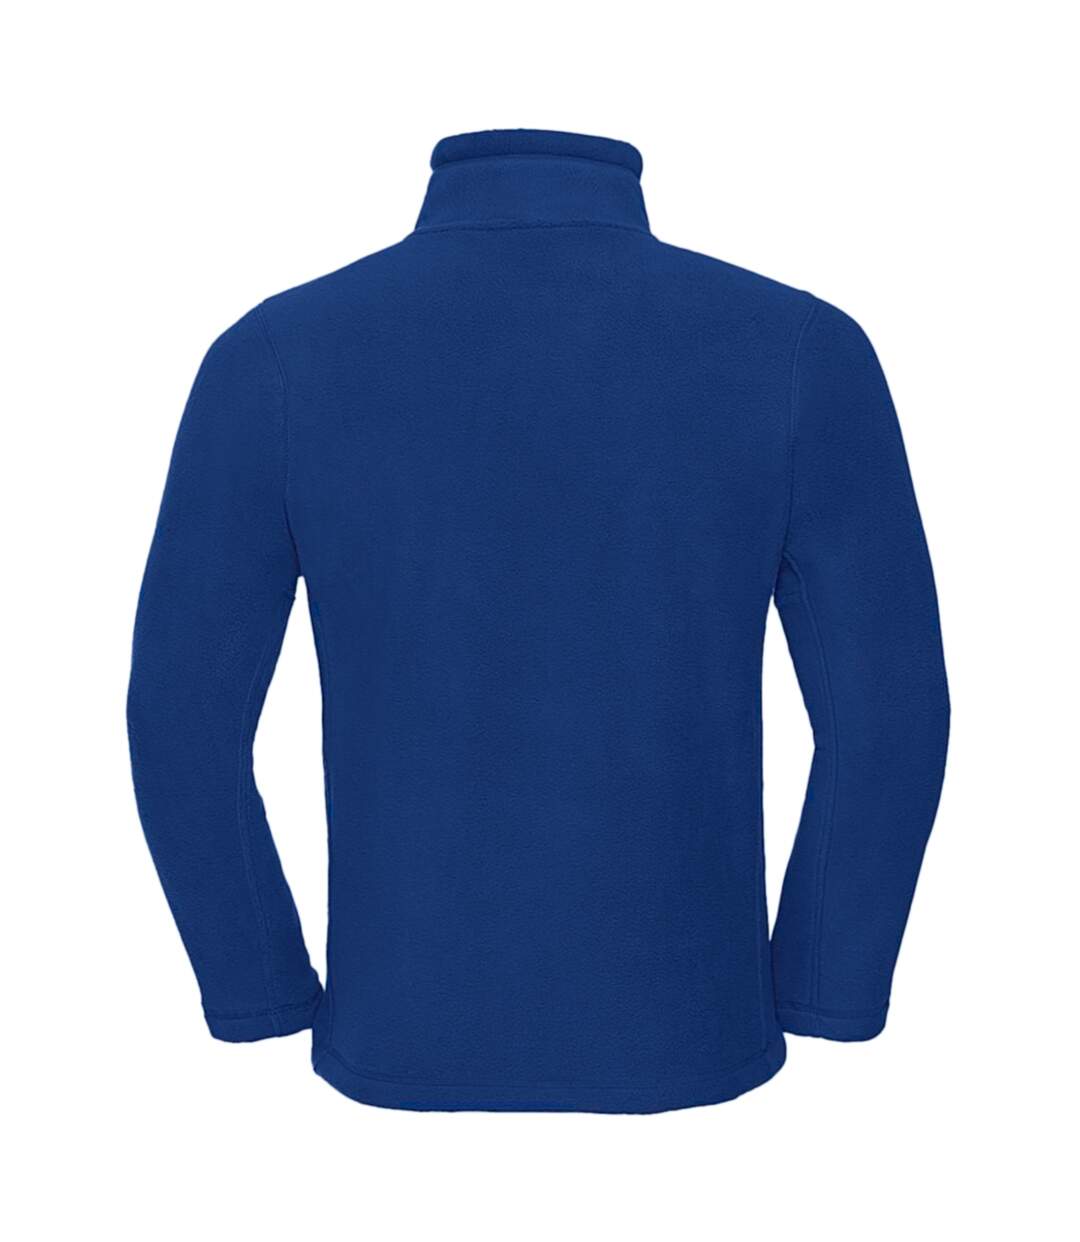 Russell Mens Full Zip Outdoor Fleece Jacket (Bright Royal) - UTBC575